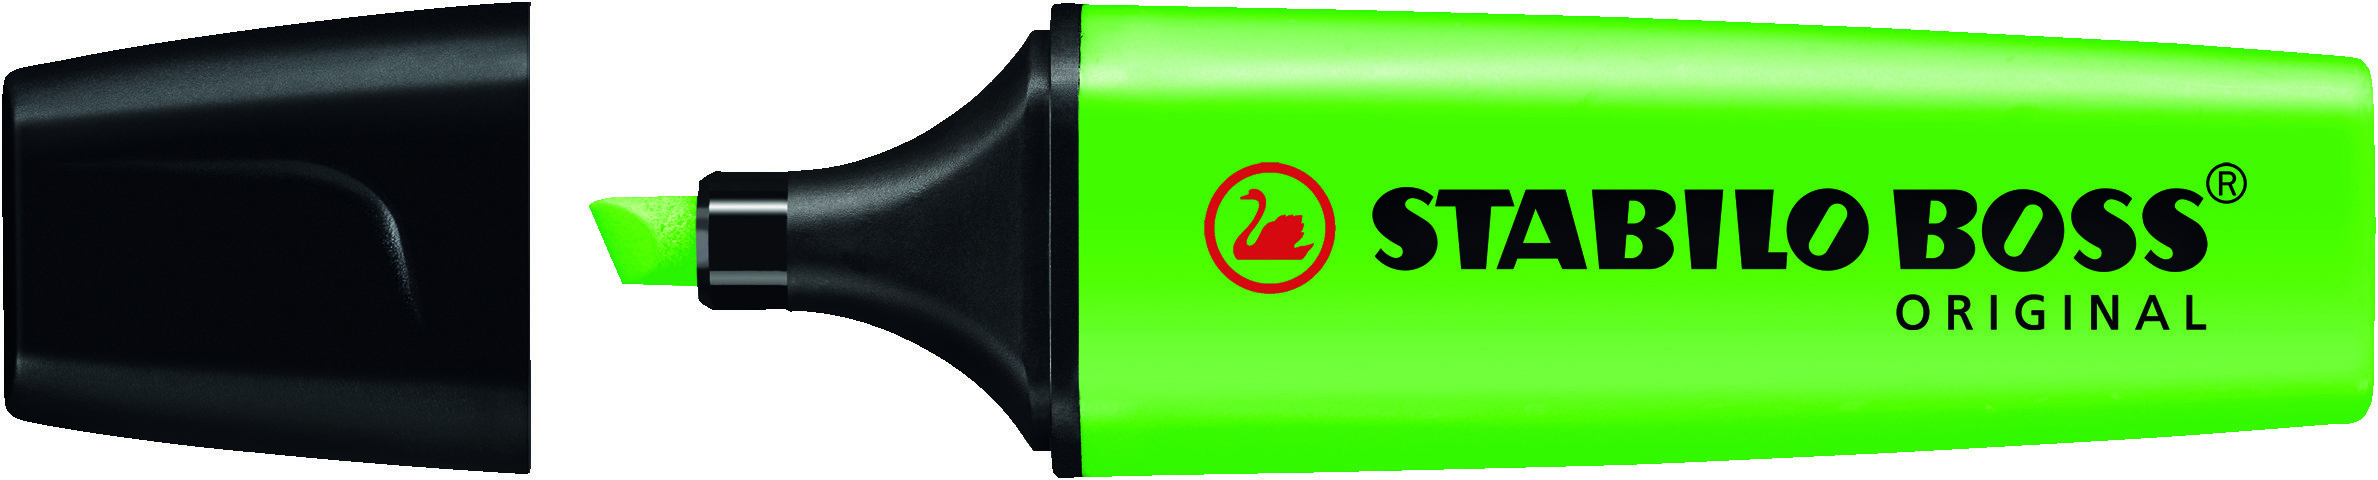 Stabilo Boss 70 Rotulador Marcador Fluorescente - Trazo entre 2 y 5mm - Recargable - Tinta con Base 